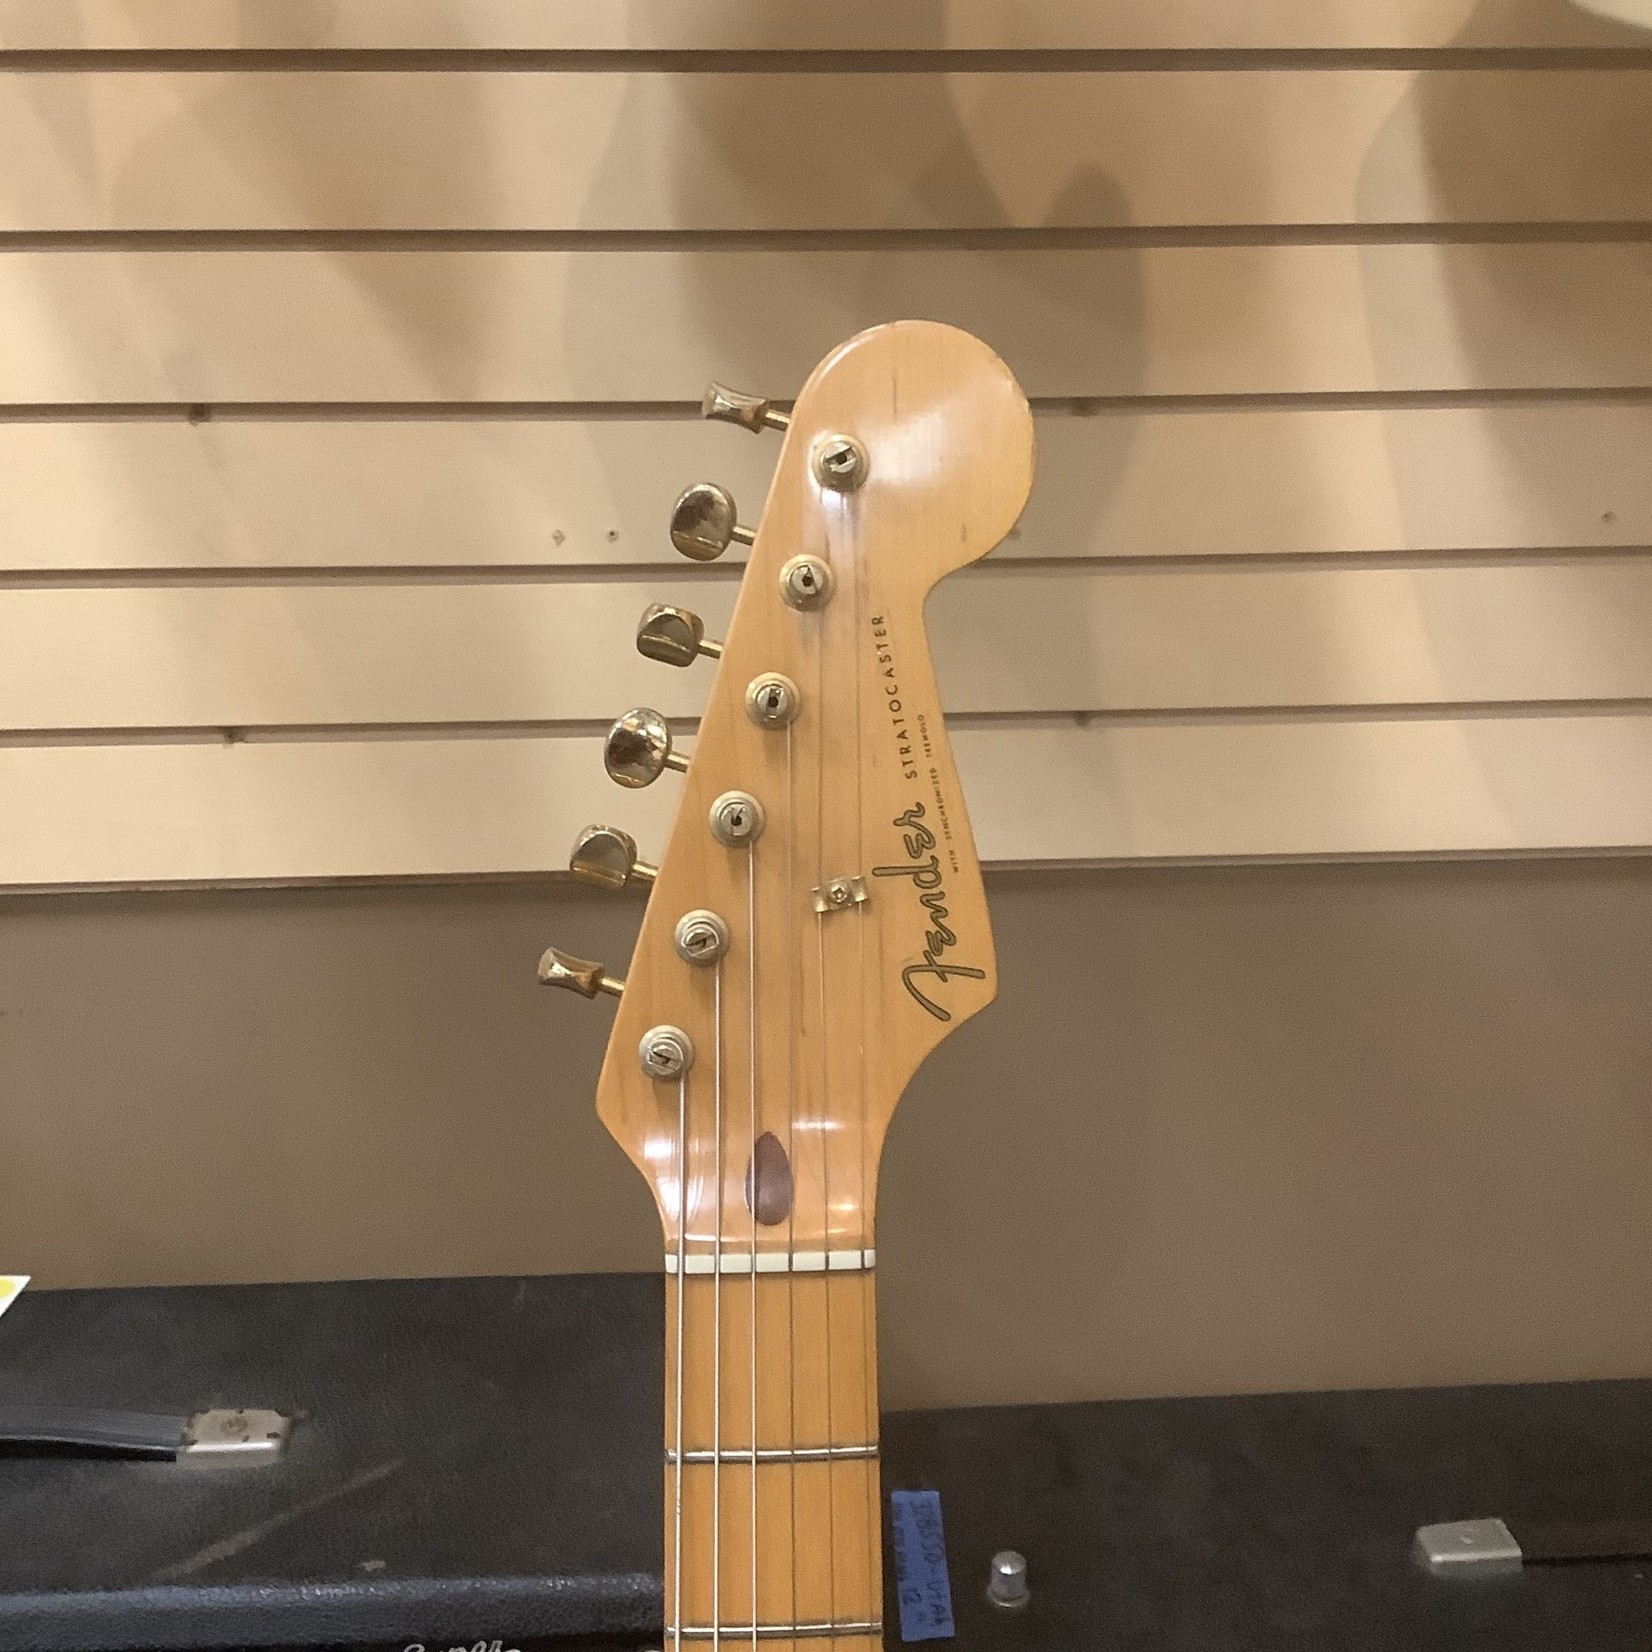 Fender 1989 Fender Stratocaster "Mary Kay" Reissue Translucent Blonde